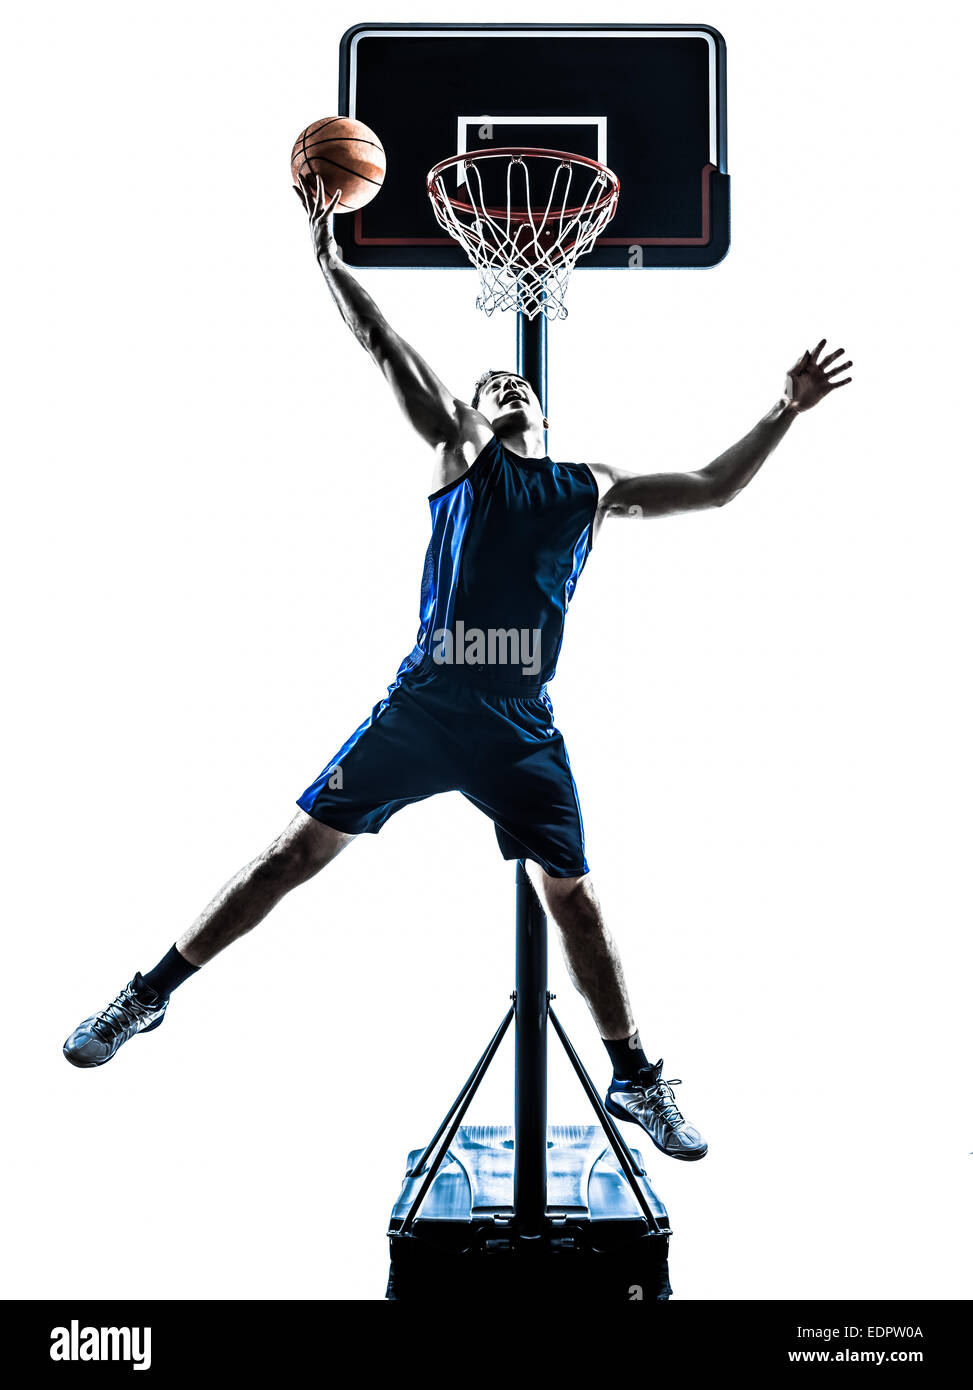 Joueur de basket-ball d'un homme sautant de jeter en silhouette isolé sur fond blanc Banque D'Images